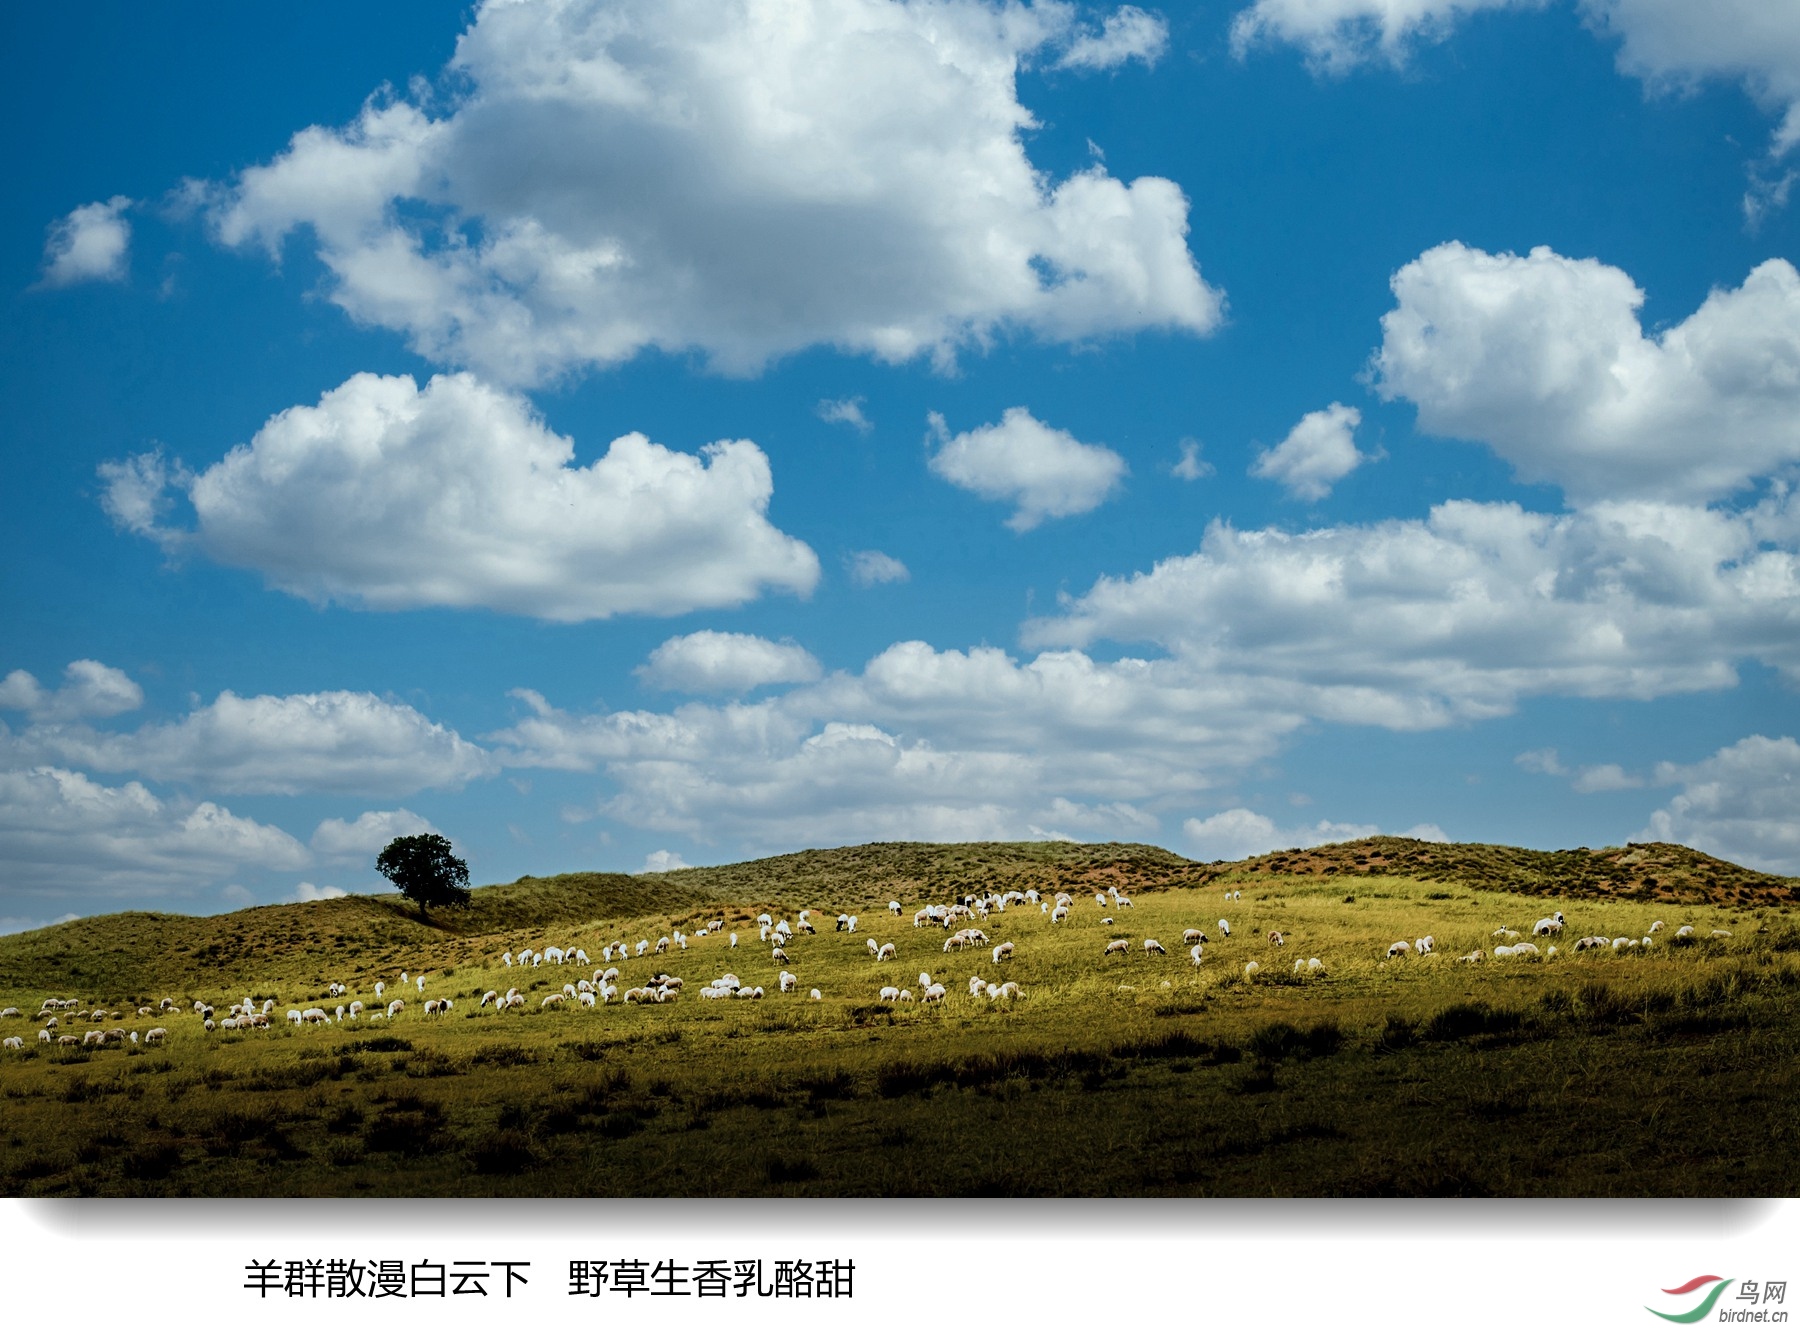 羊群微信图片图片